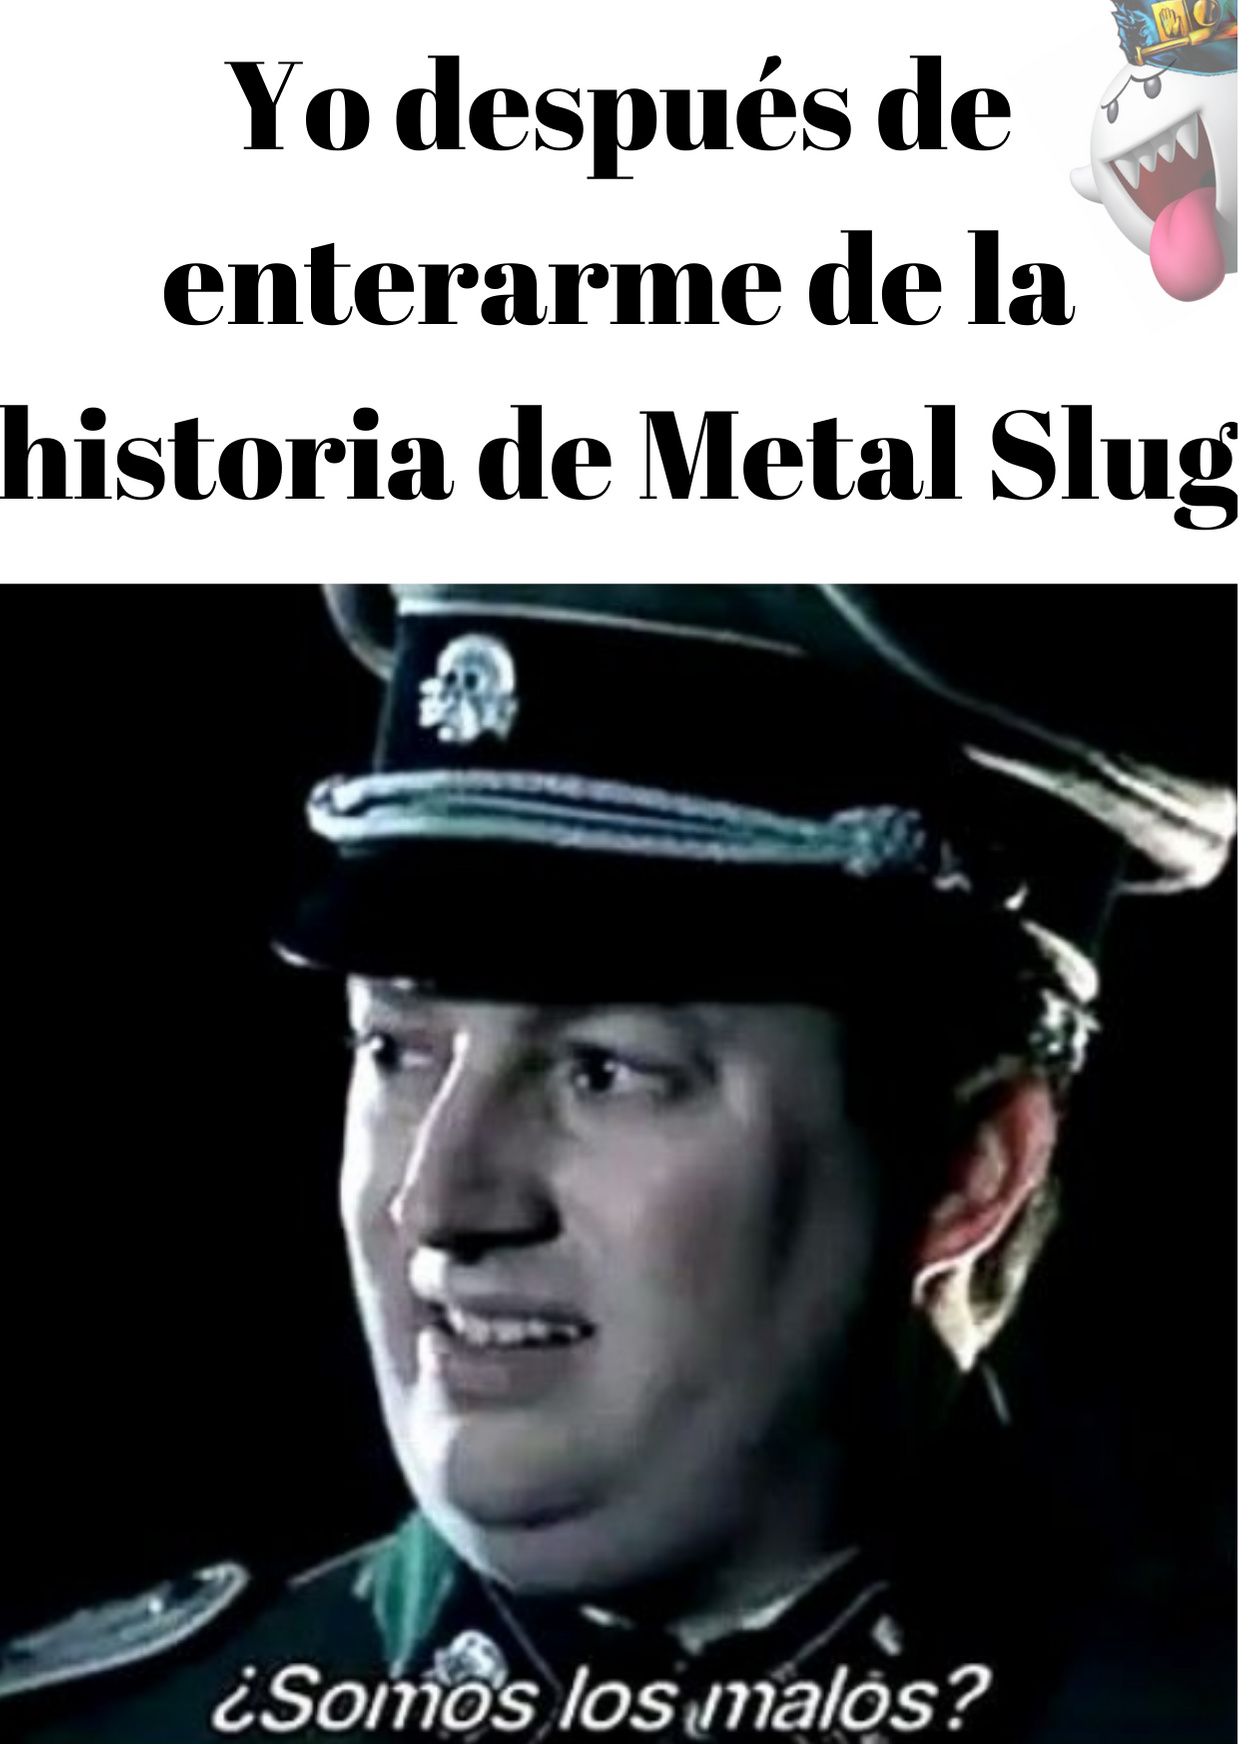 Metal slug - meme